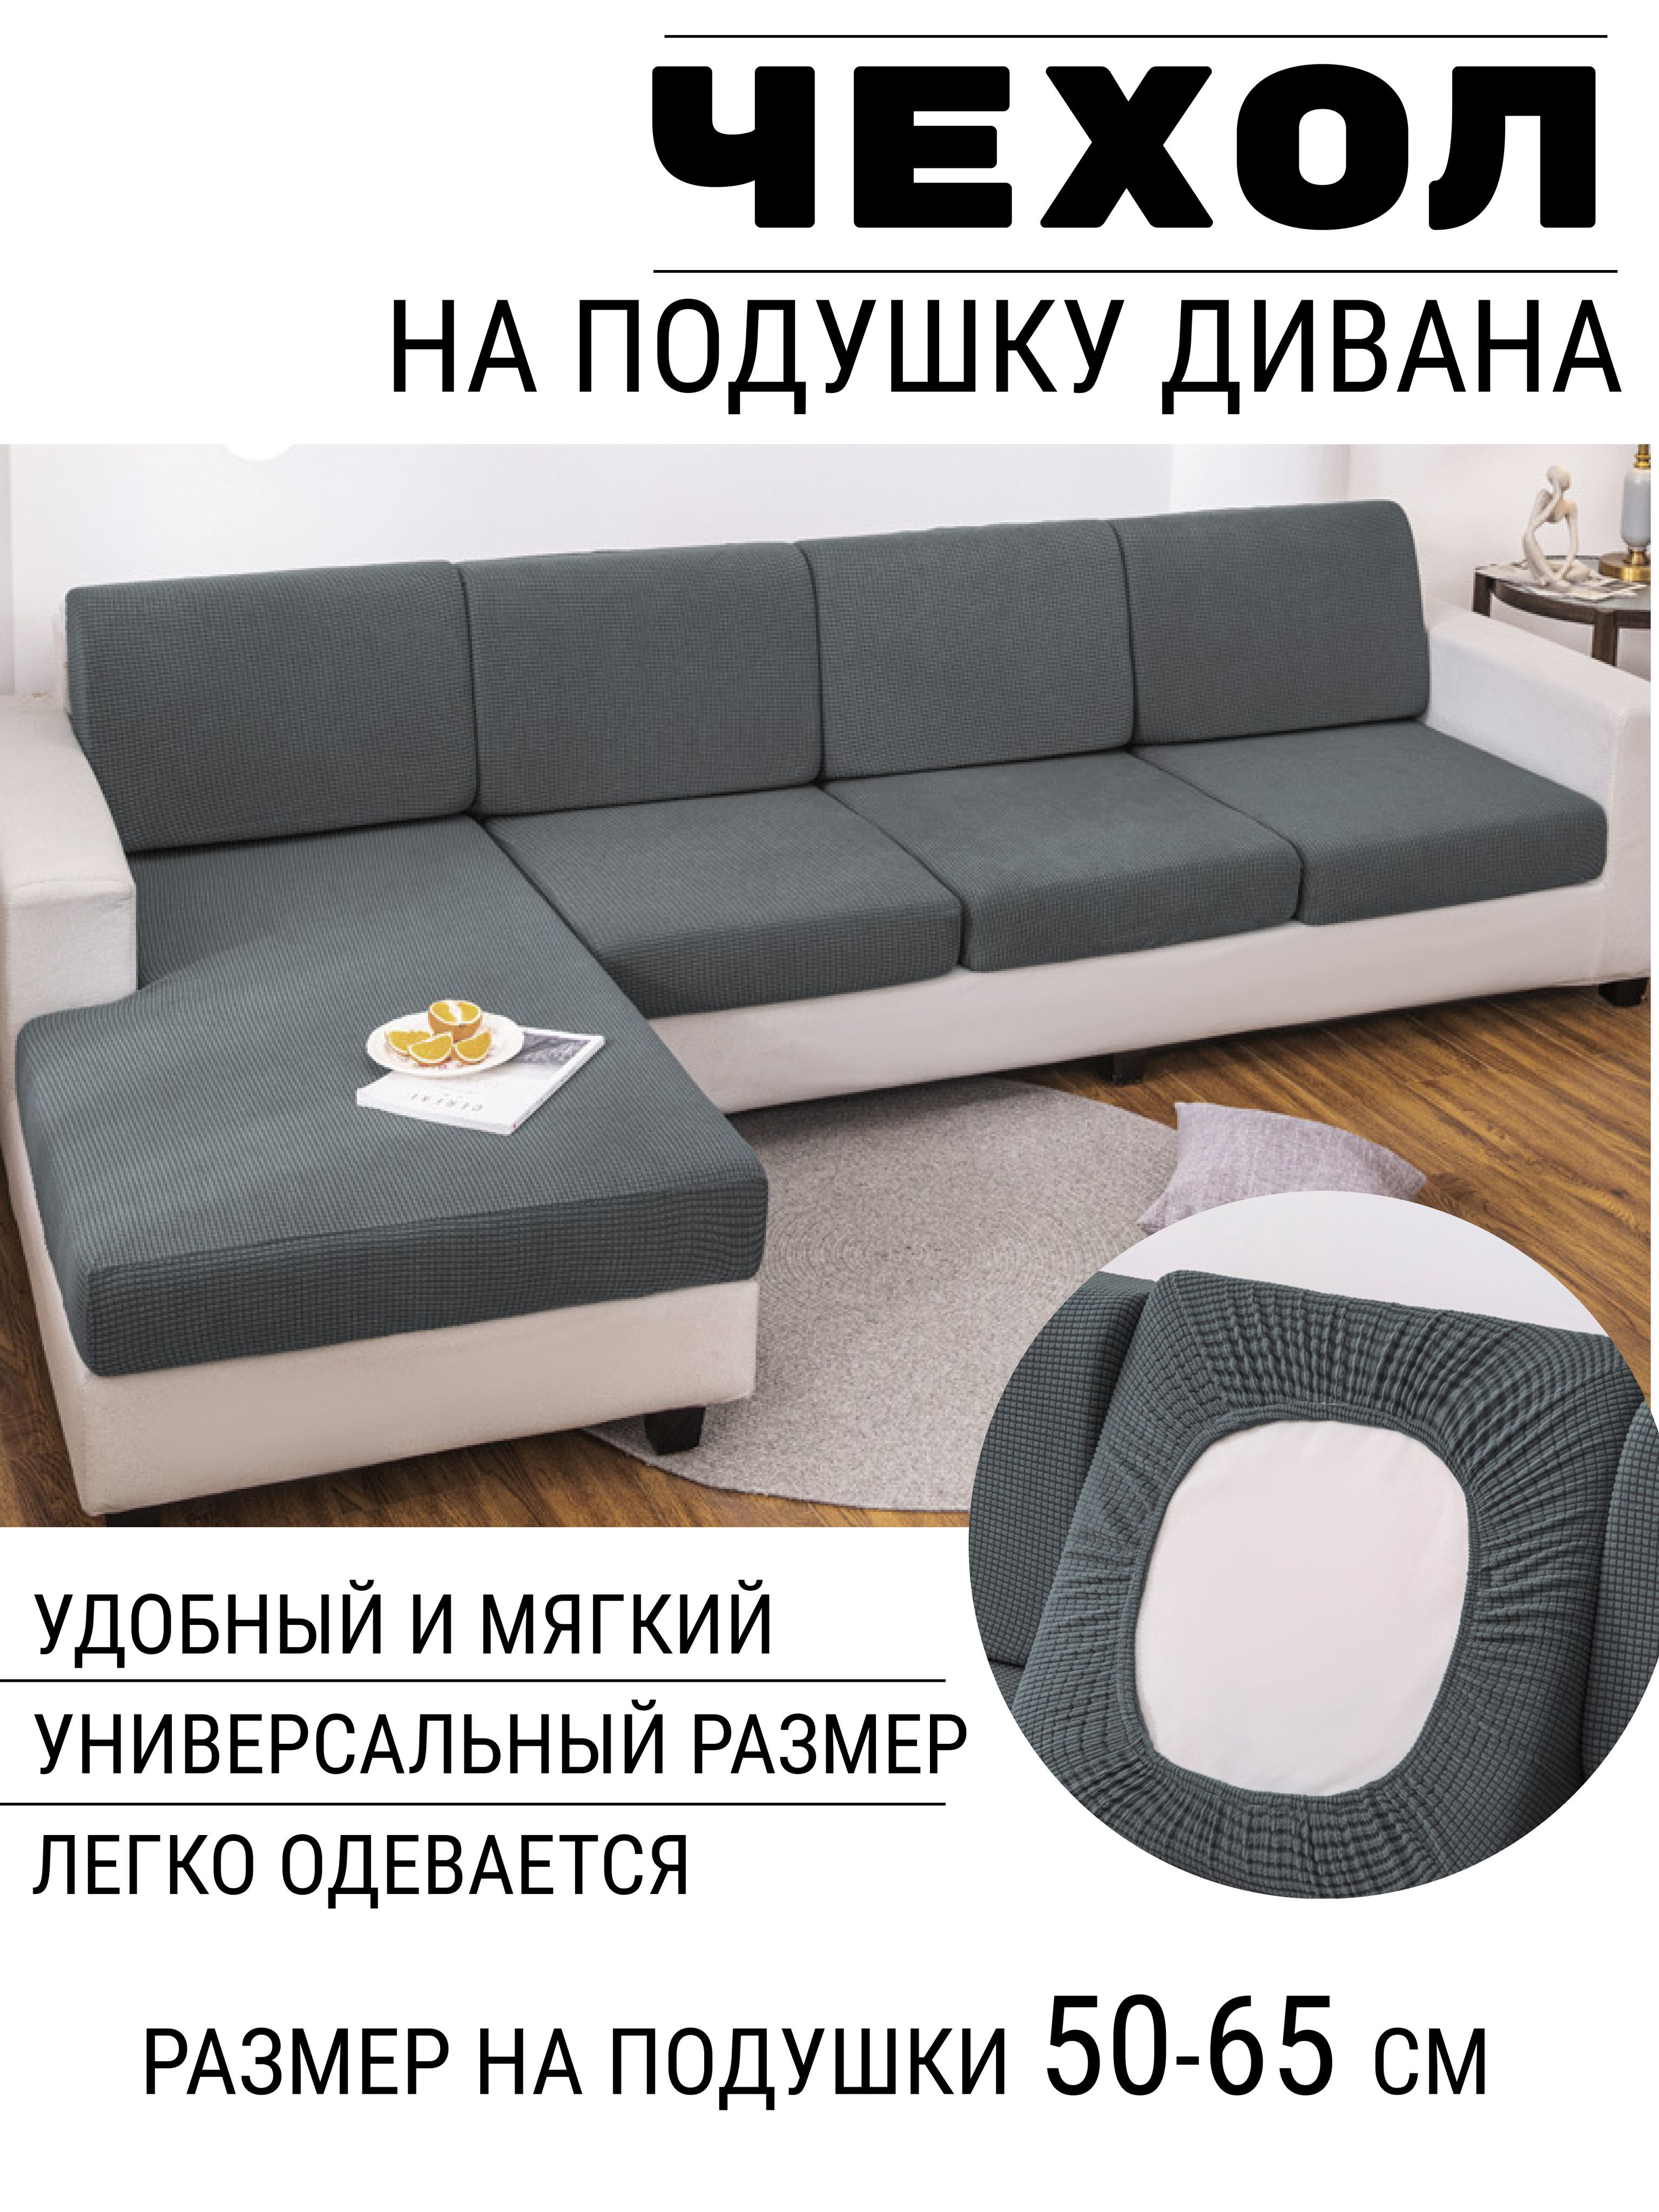 Пошив чехлов для мебели в Санкт-Петербурге по недорогой - заказать